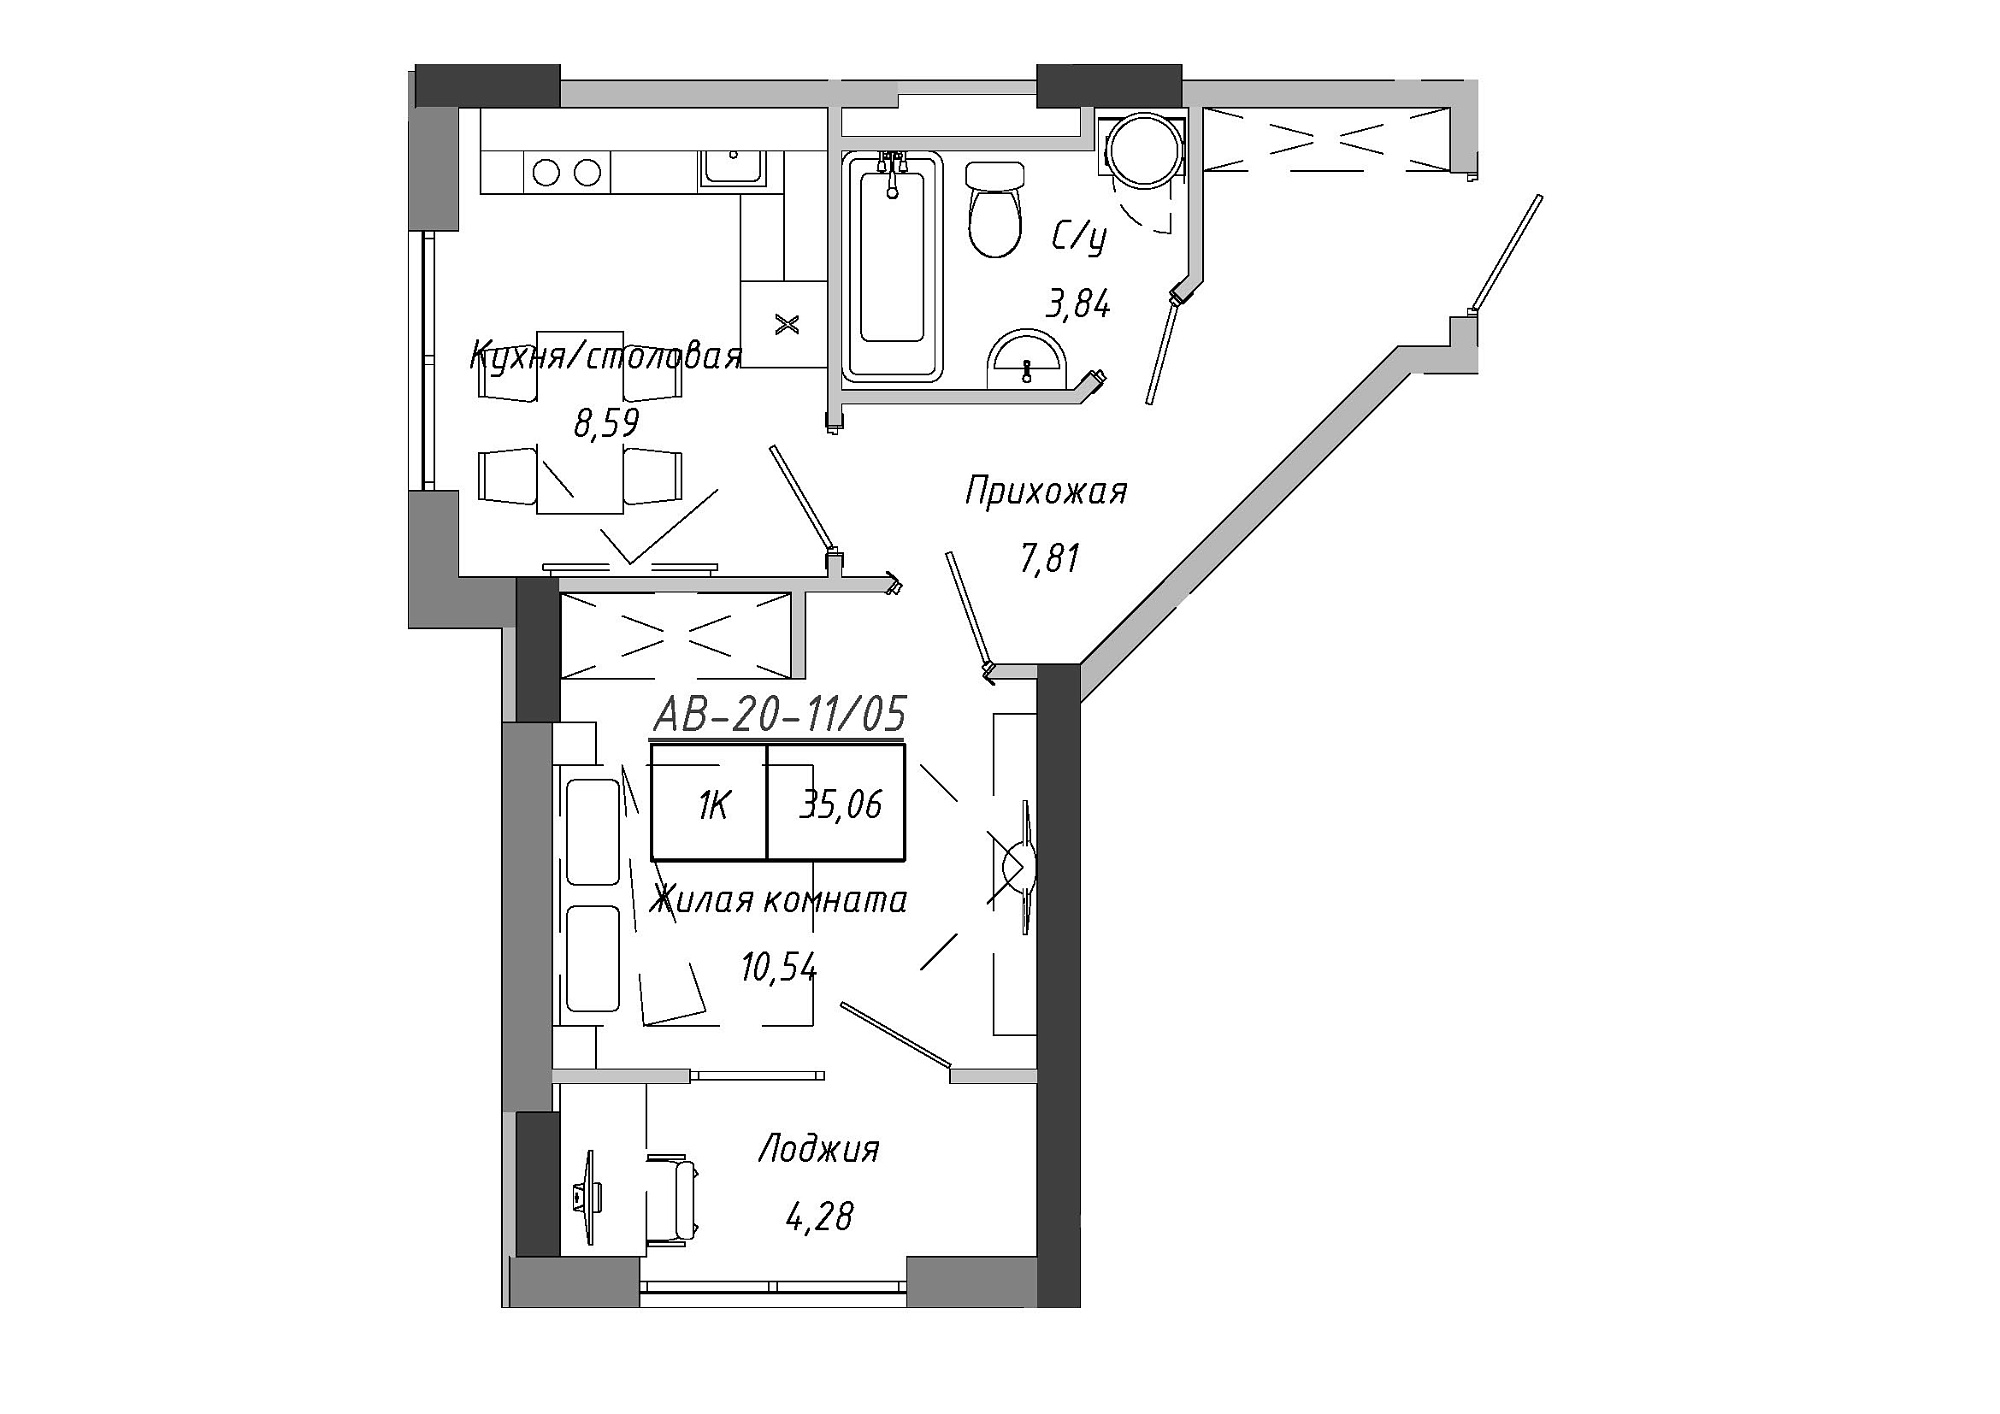 Планировка 1-к квартира площей 33.55м2, AB-20-11/00005.